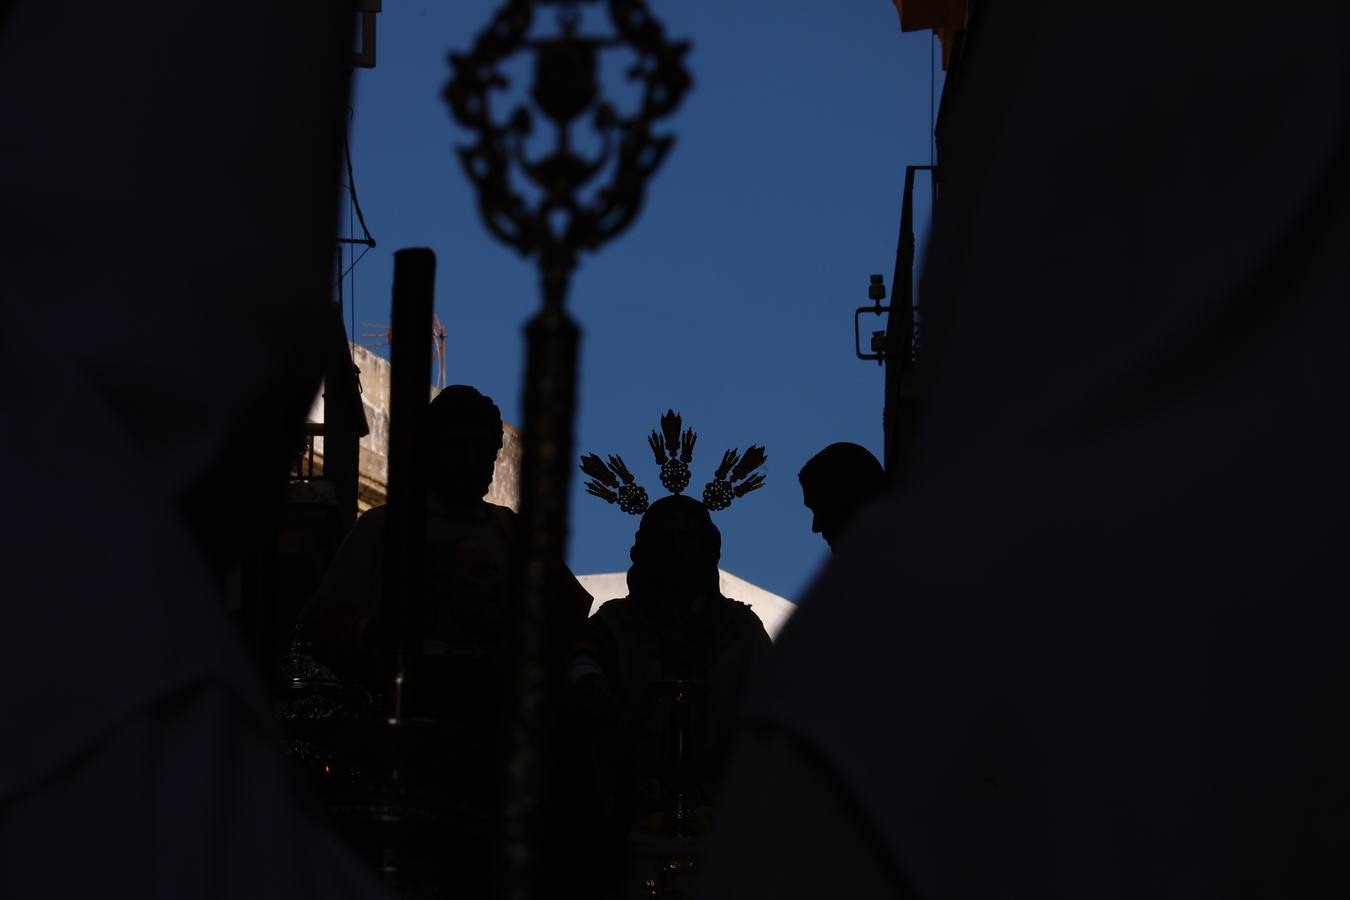 FOTOS: Sagrada Cena en la Semana Santa de Cádiz 2019